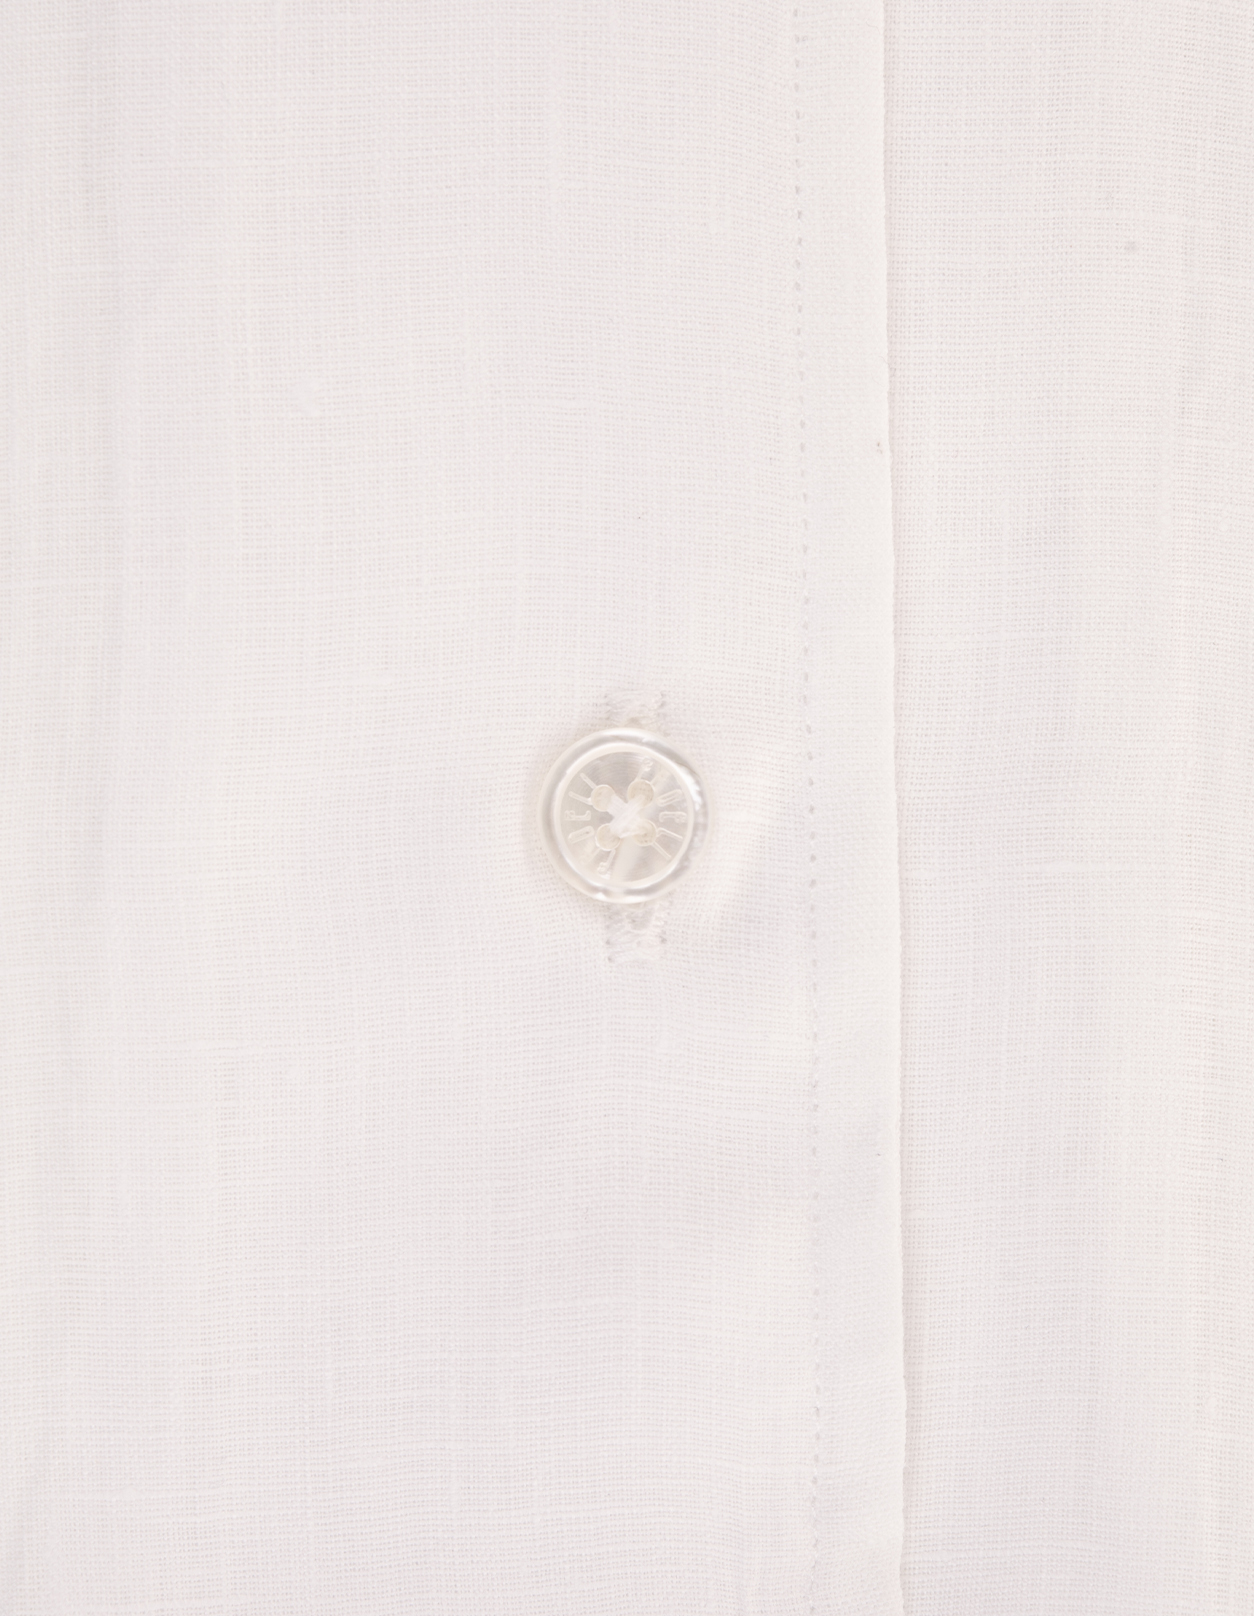 Camicia Classica In Cotone Leggero Bianco FEDELI | UED0501CE-CC41